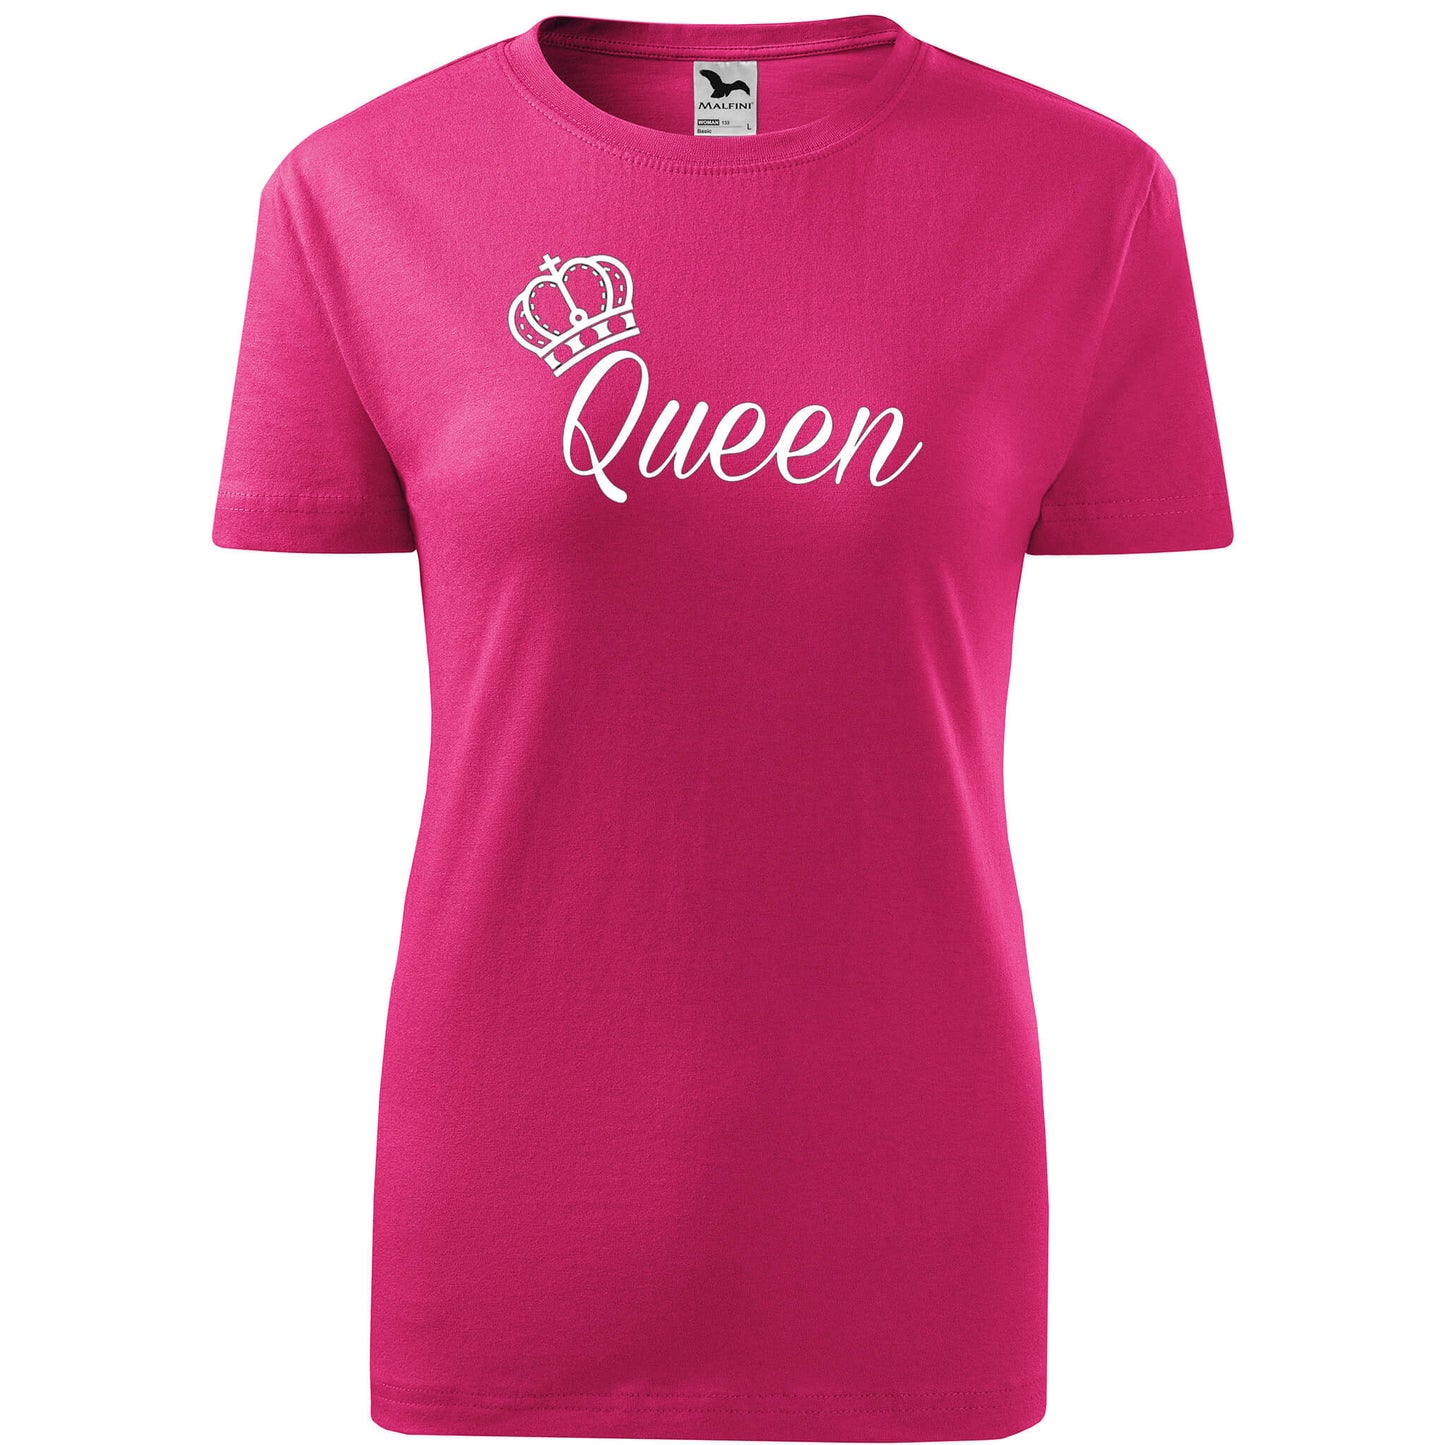 T-shirt - Queen - rvdesignprint